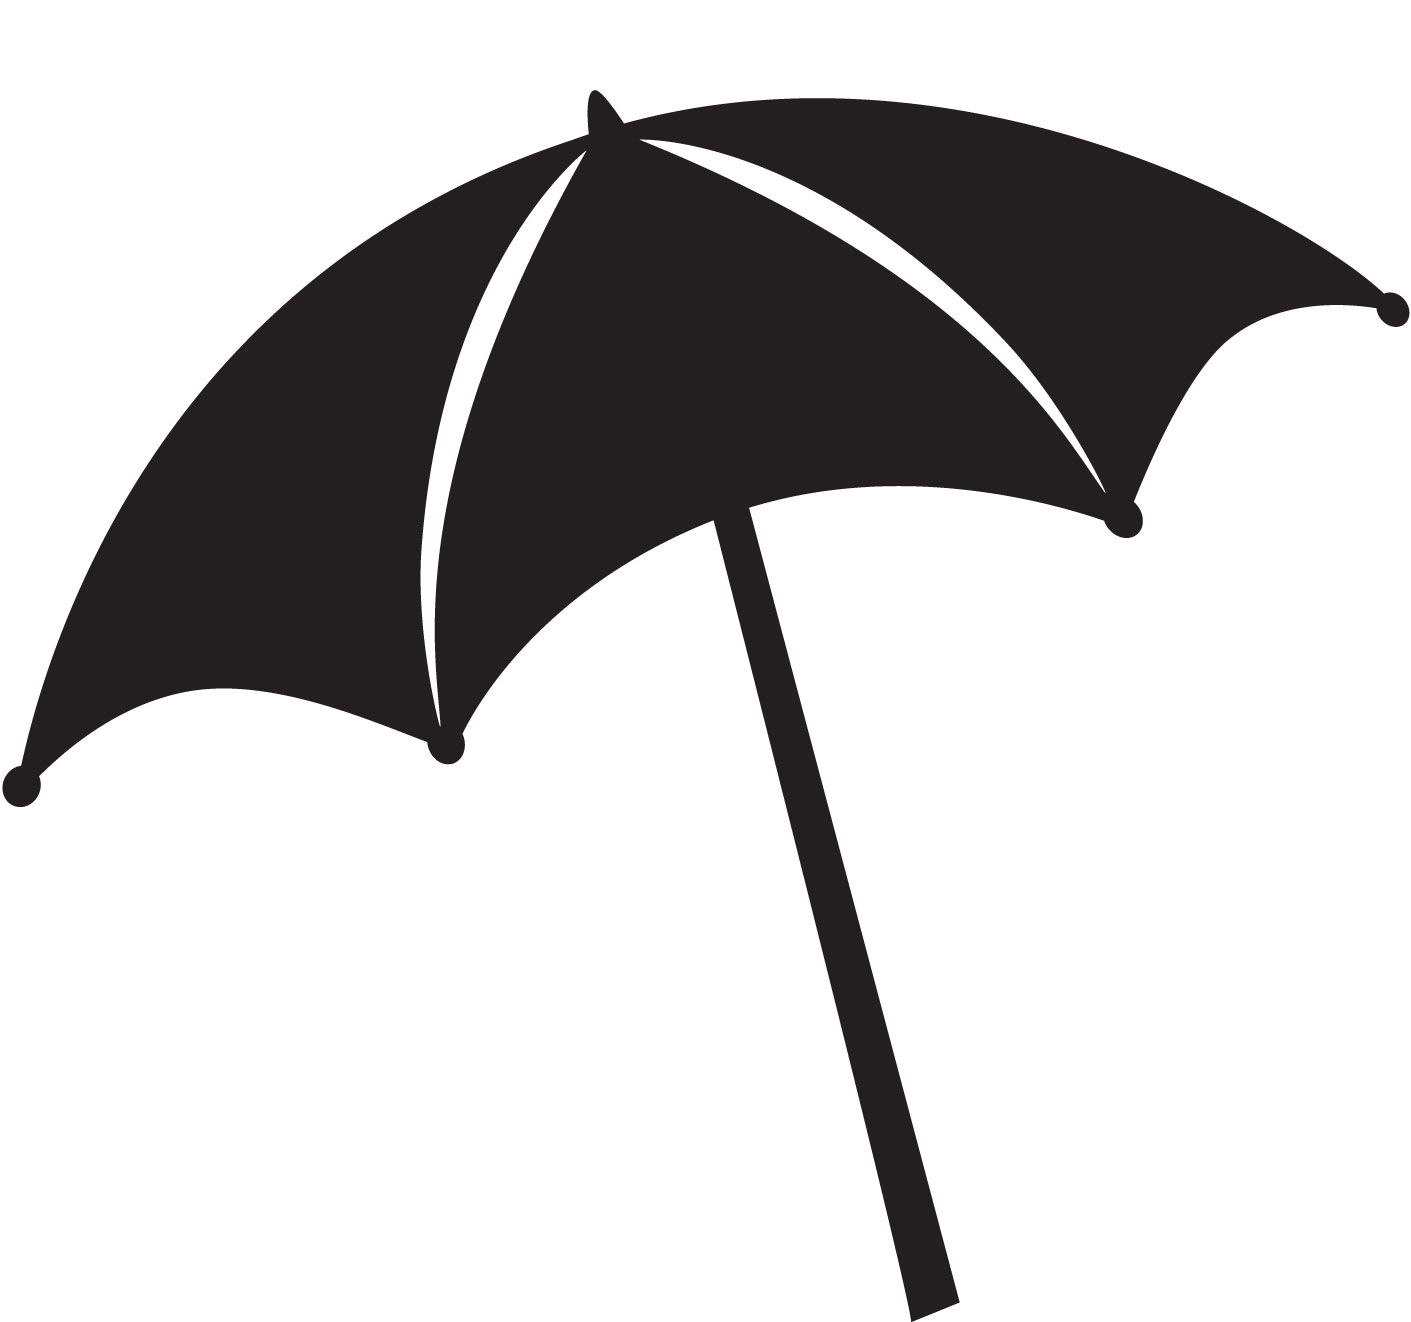 Free Umbrella Silhouette Clip Art, Download Free Clip Art